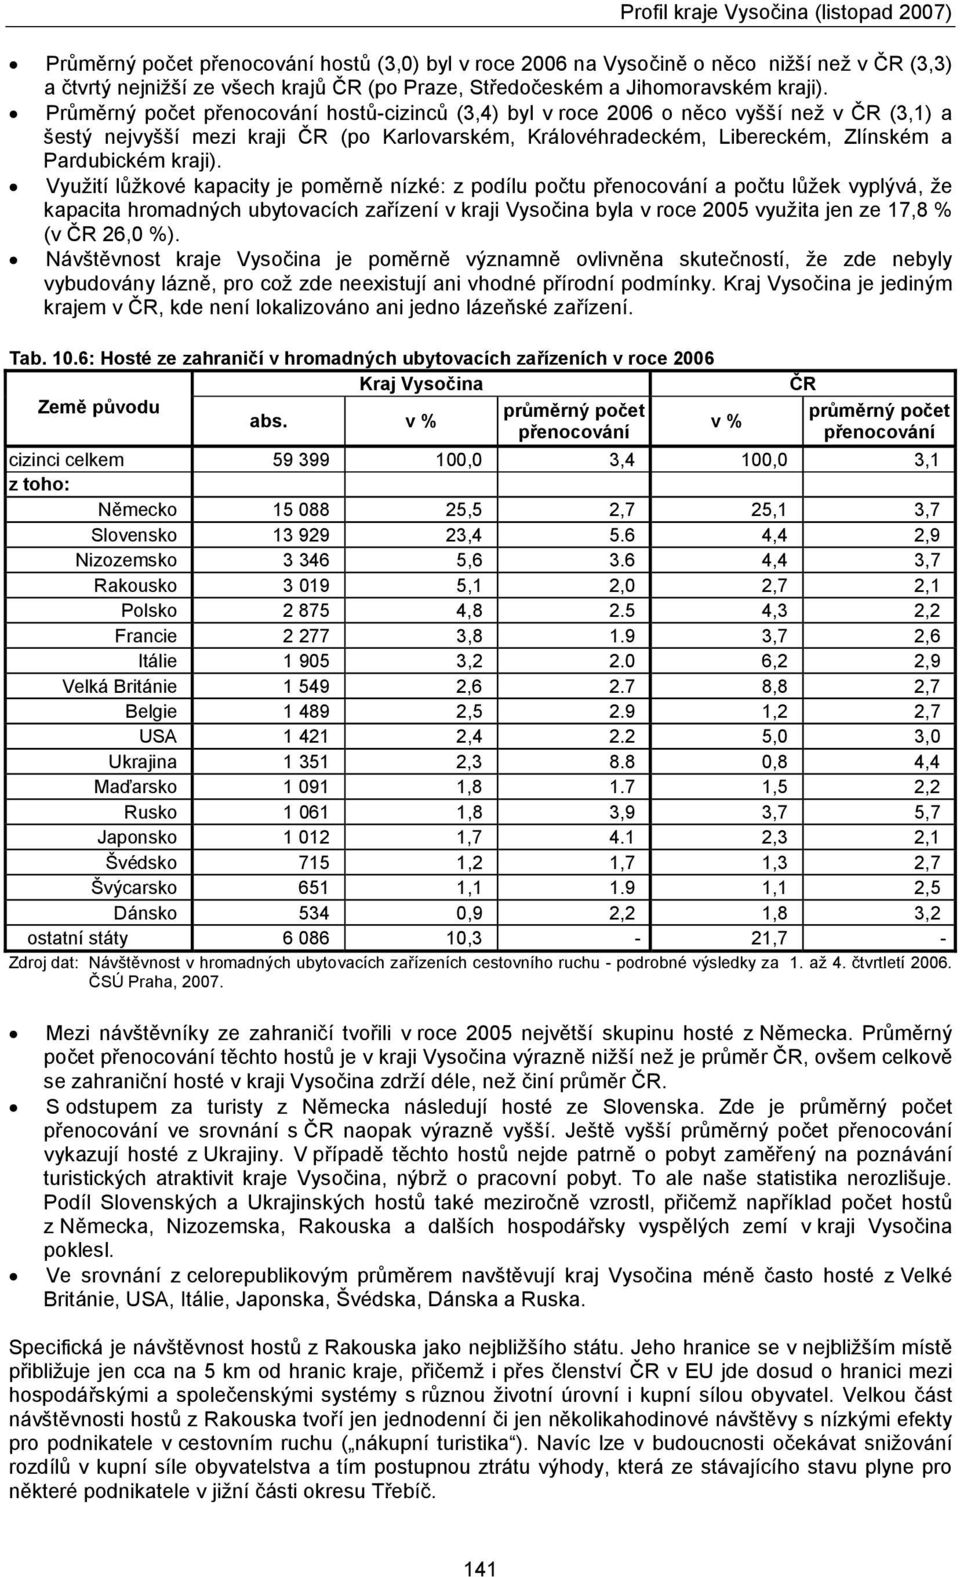 Využití lůžkové kapacity je poměrně nízké: z podílu počtu přenocování a počtu lůžek vyplývá, že kapacita hromadných ubytovacích zařízení v kraji Vysočina byla v roce 2005 využita jen ze 17,8 % (v ČR